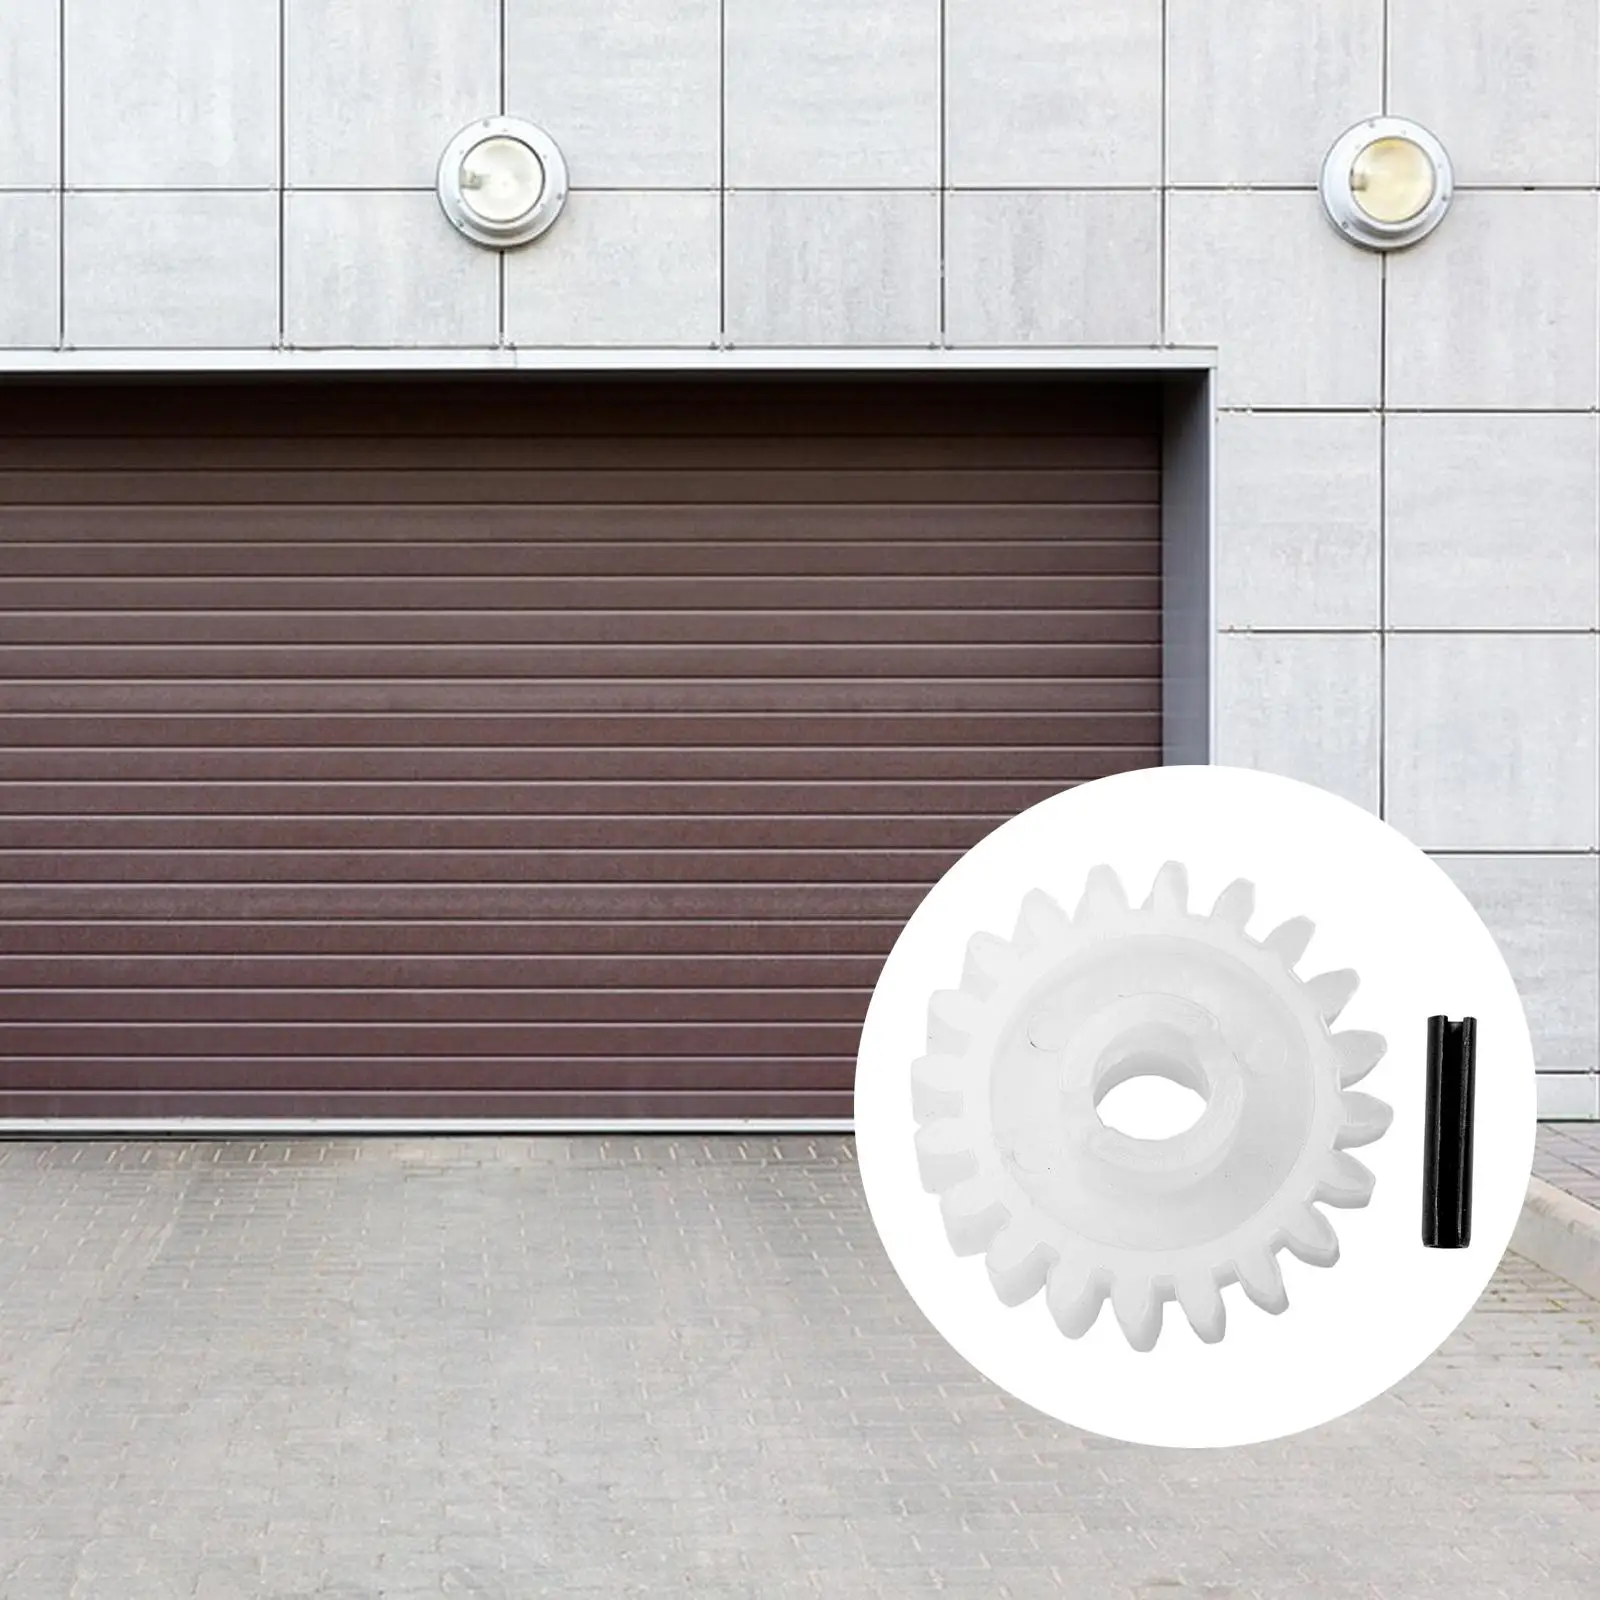 Garage Door Gear Upgrade Practical 2.17inch Lightweight Replaceable Garage Door Opener for XX133 XX333 XX350 DIY Accessory